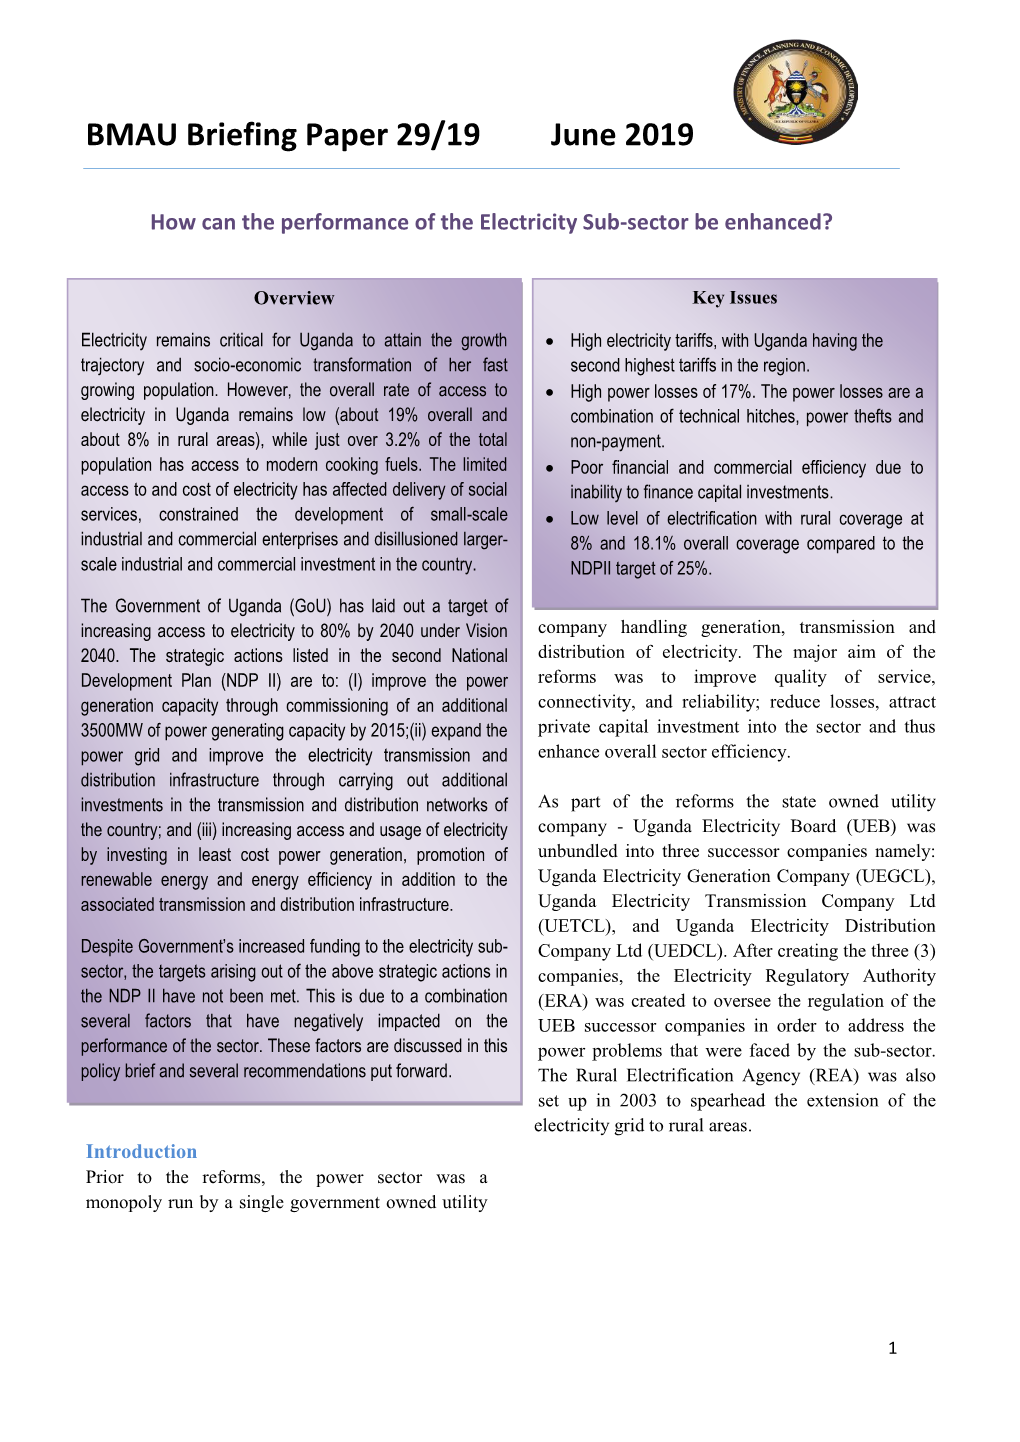 BMAU Briefing Paper 29/19 June 2019